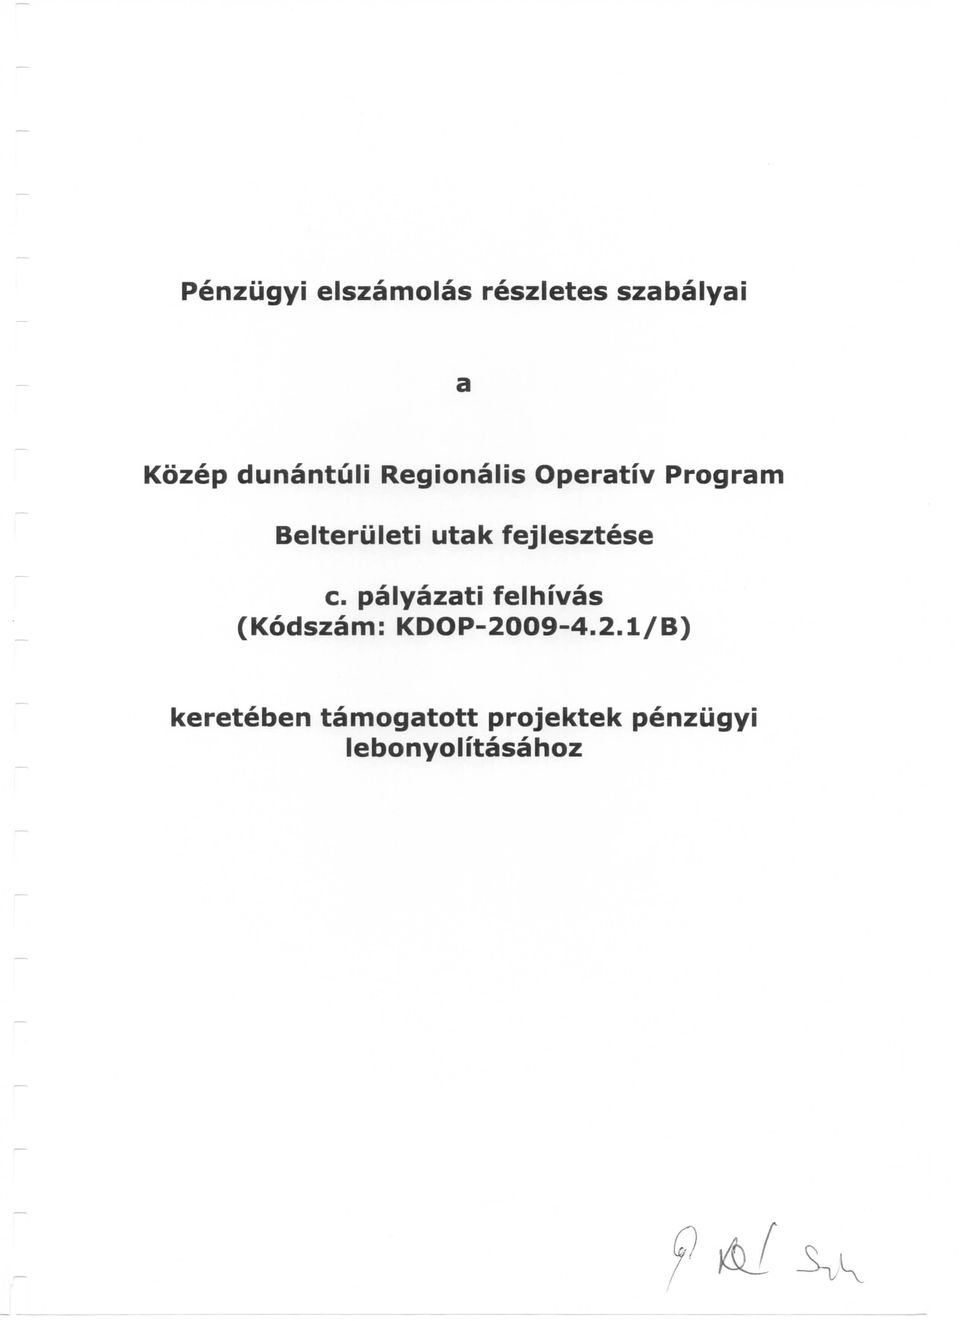 fejlesztese c. palyazati felhivas (Kodszam: KDOP-2009-4.